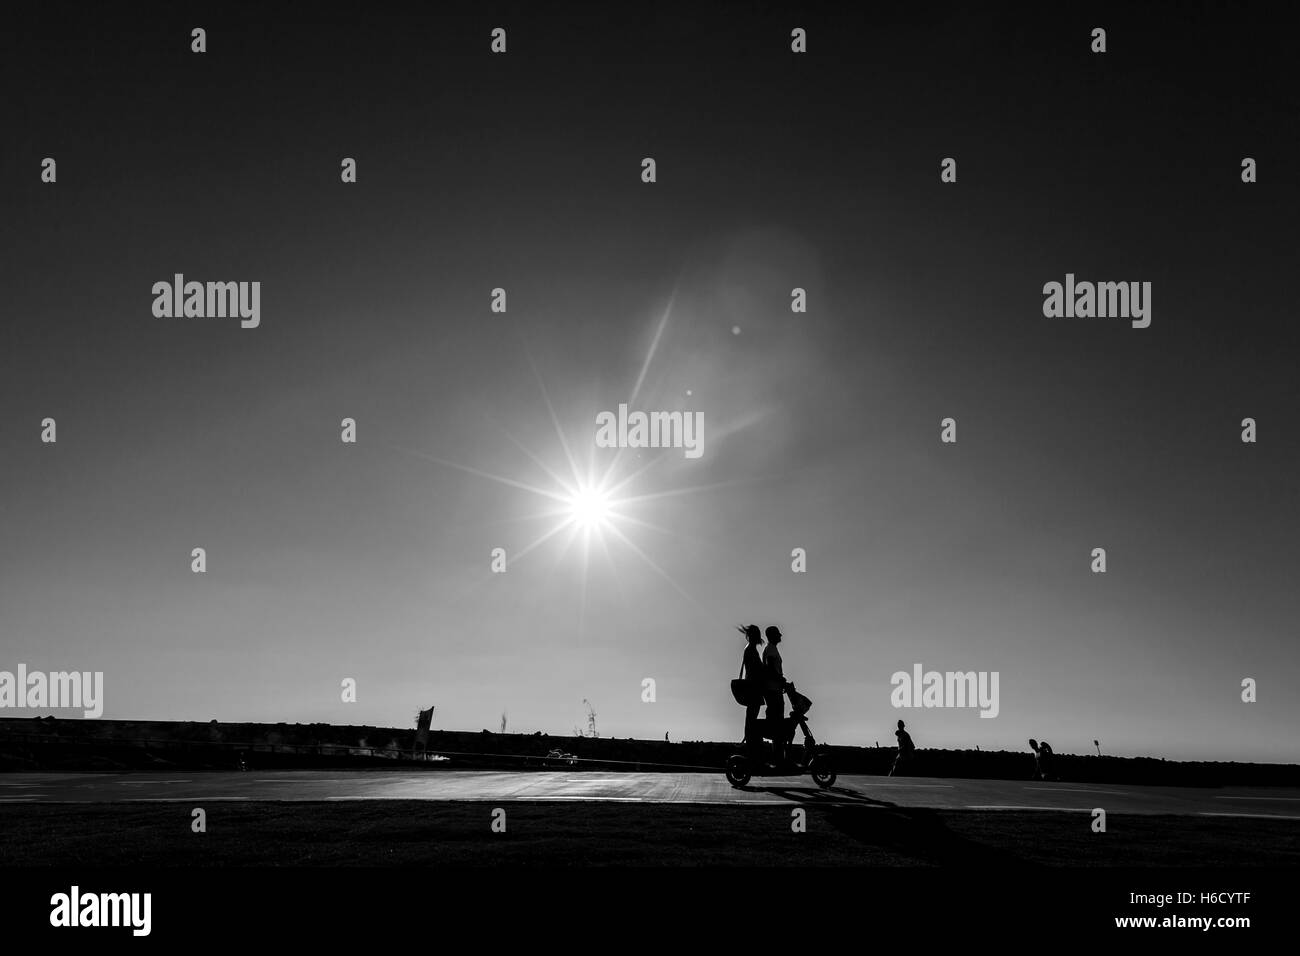 Silhouette de triporteur motorisé coureurs passant sur un sentier du parc sur une claire journée d'été, soleil de l'après-midi. Banque D'Images